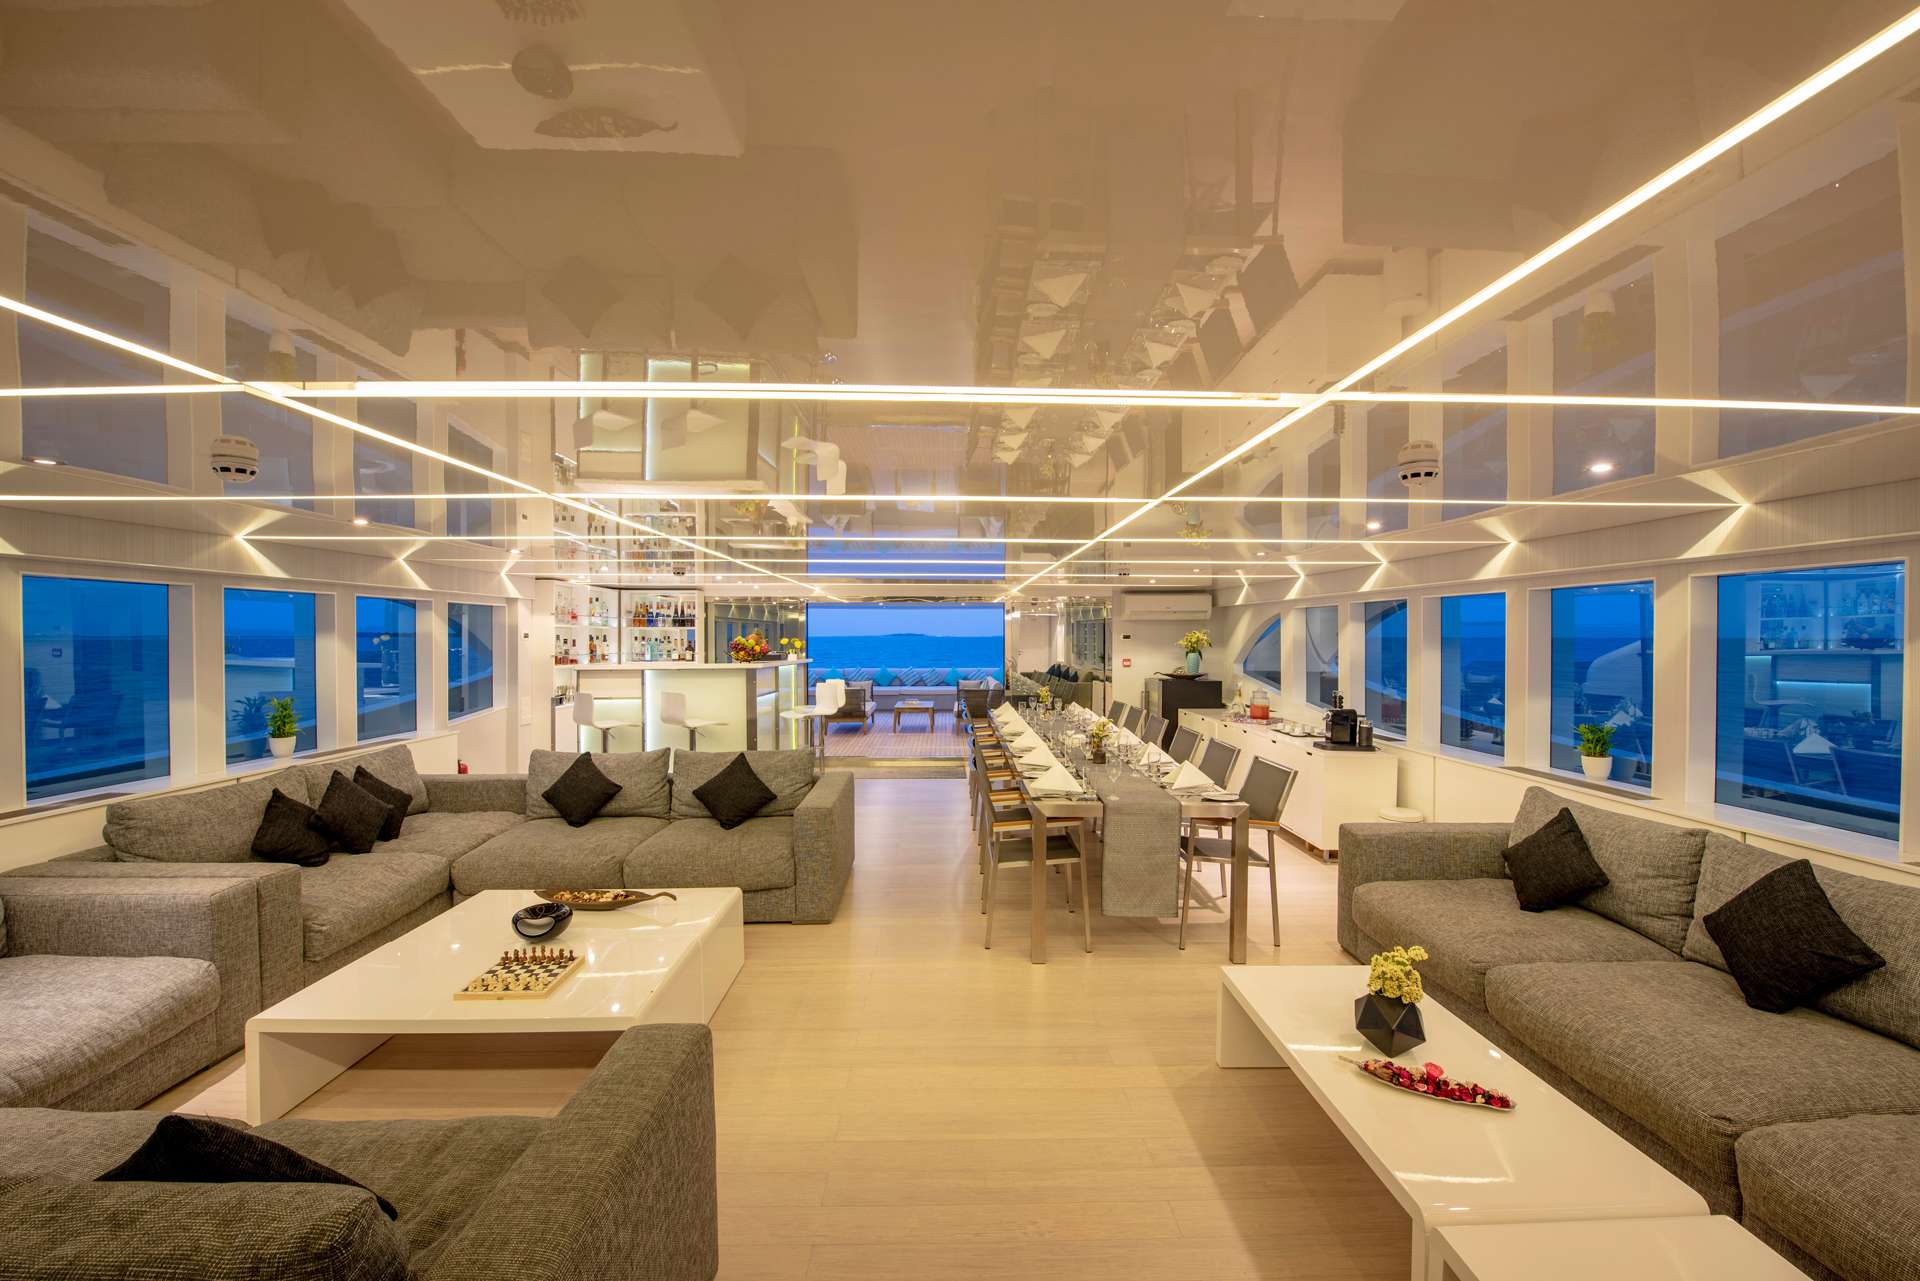 searex - Luxury yacht charter Seychelles & Boat hire in Indian Ocean & SE Asia 2